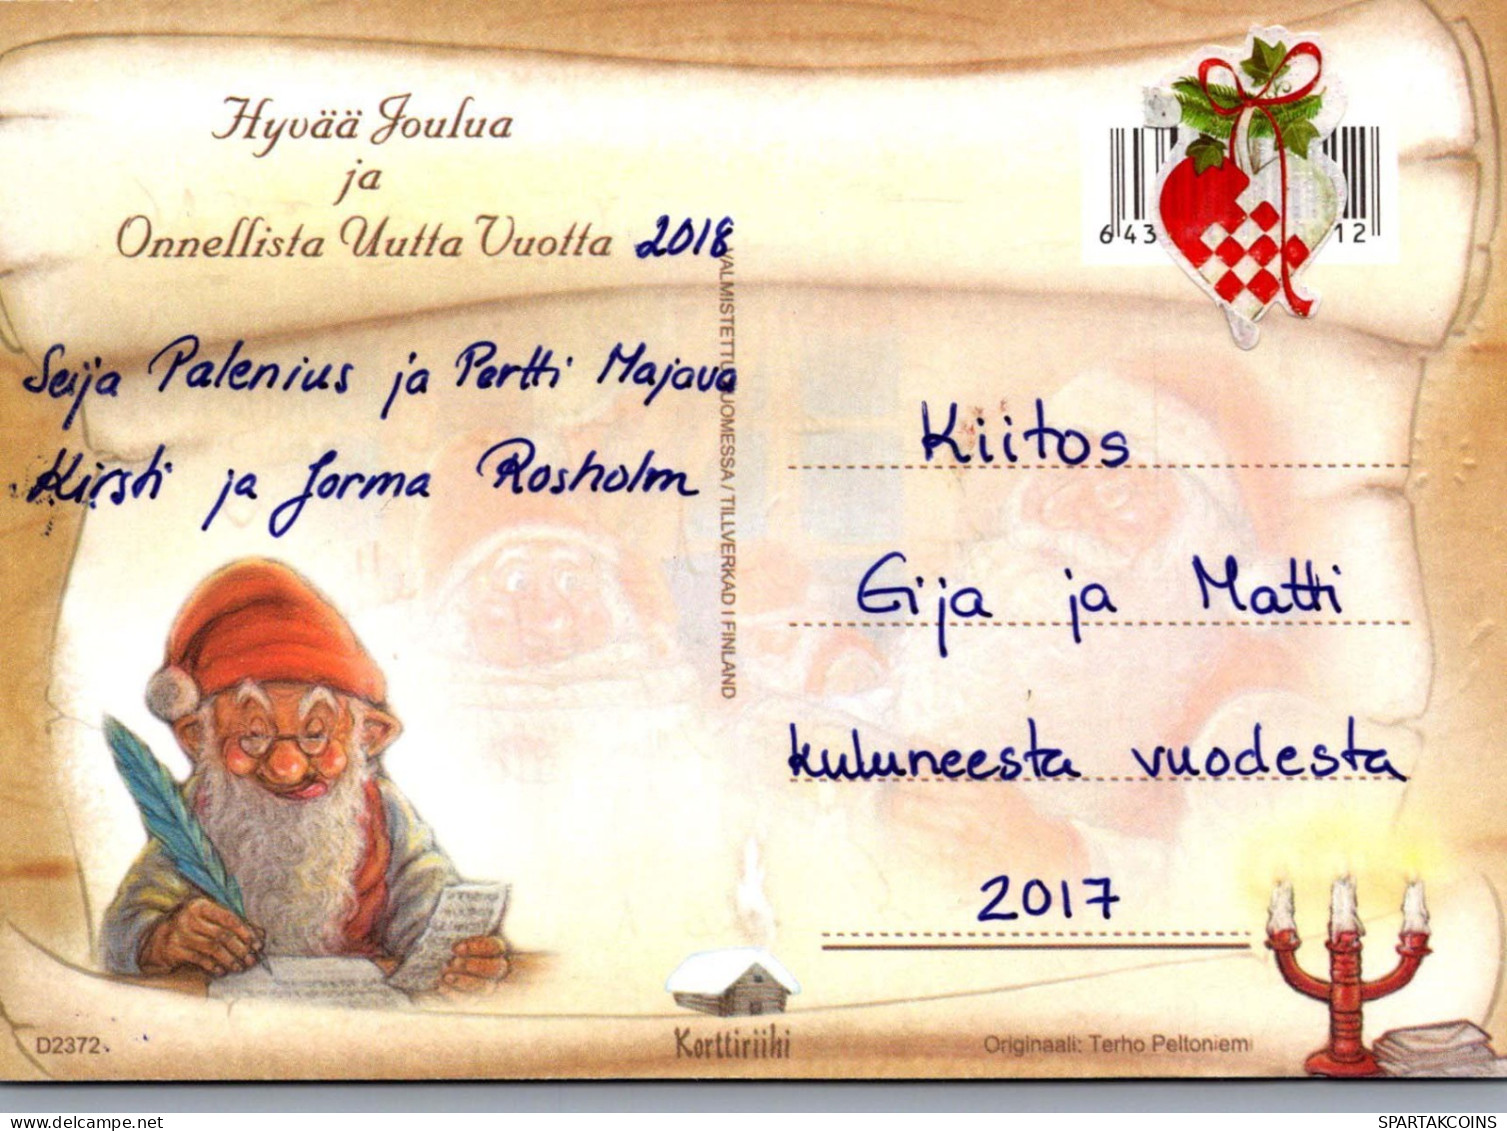 PÈRE NOËL Bonne Année Noël GNOME Vintage Carte Postale CPSM #PBL846.A - Santa Claus